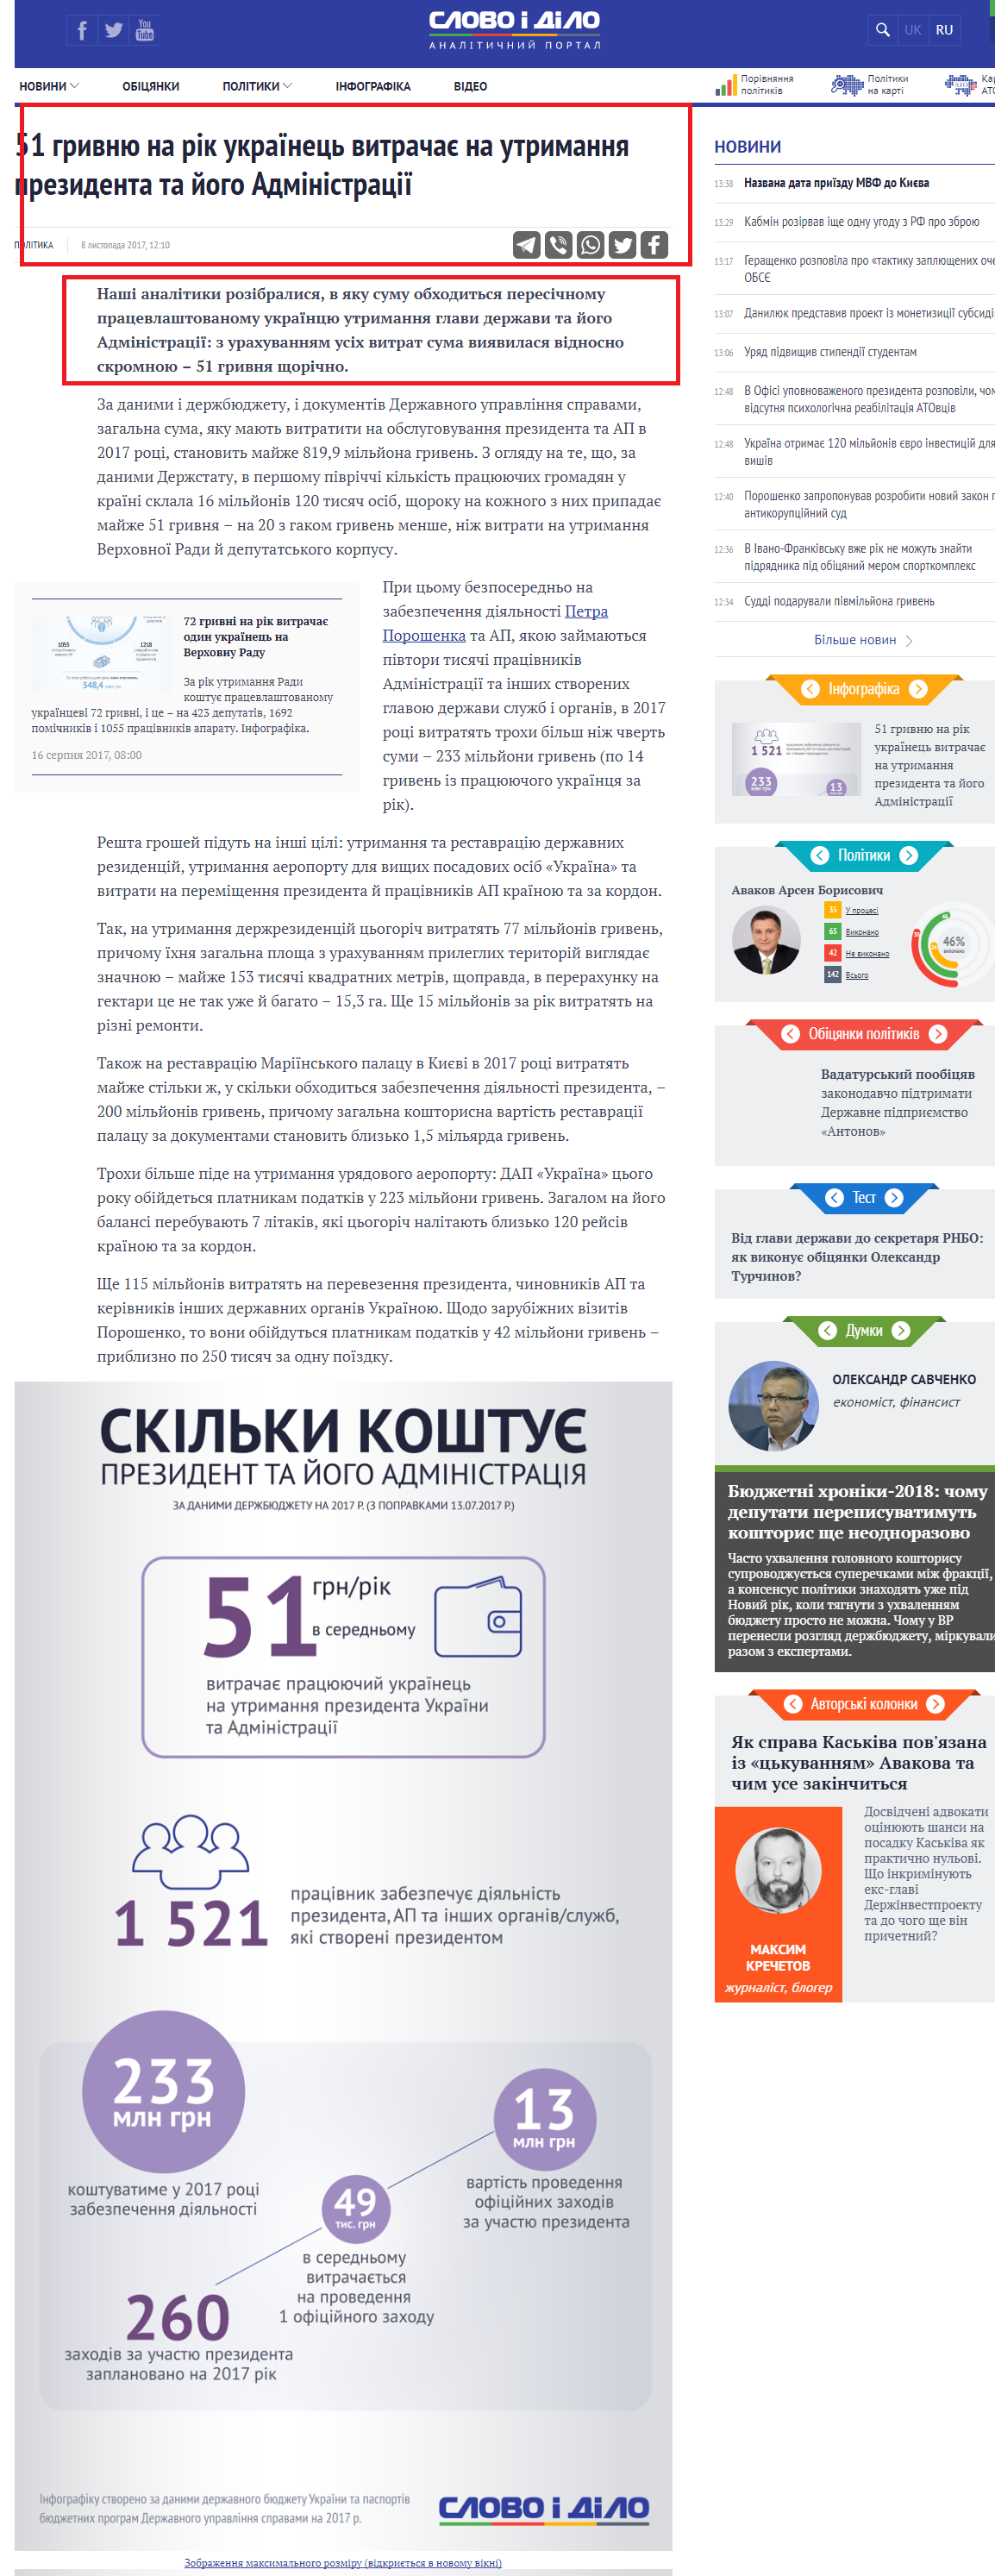 https://www.slovoidilo.ua/2017/11/08/infografika/polityka/51-hryvnyu-rik-ukrayinecz-vytrachaye-utrymannya-prezydenta-joho-administracziyi